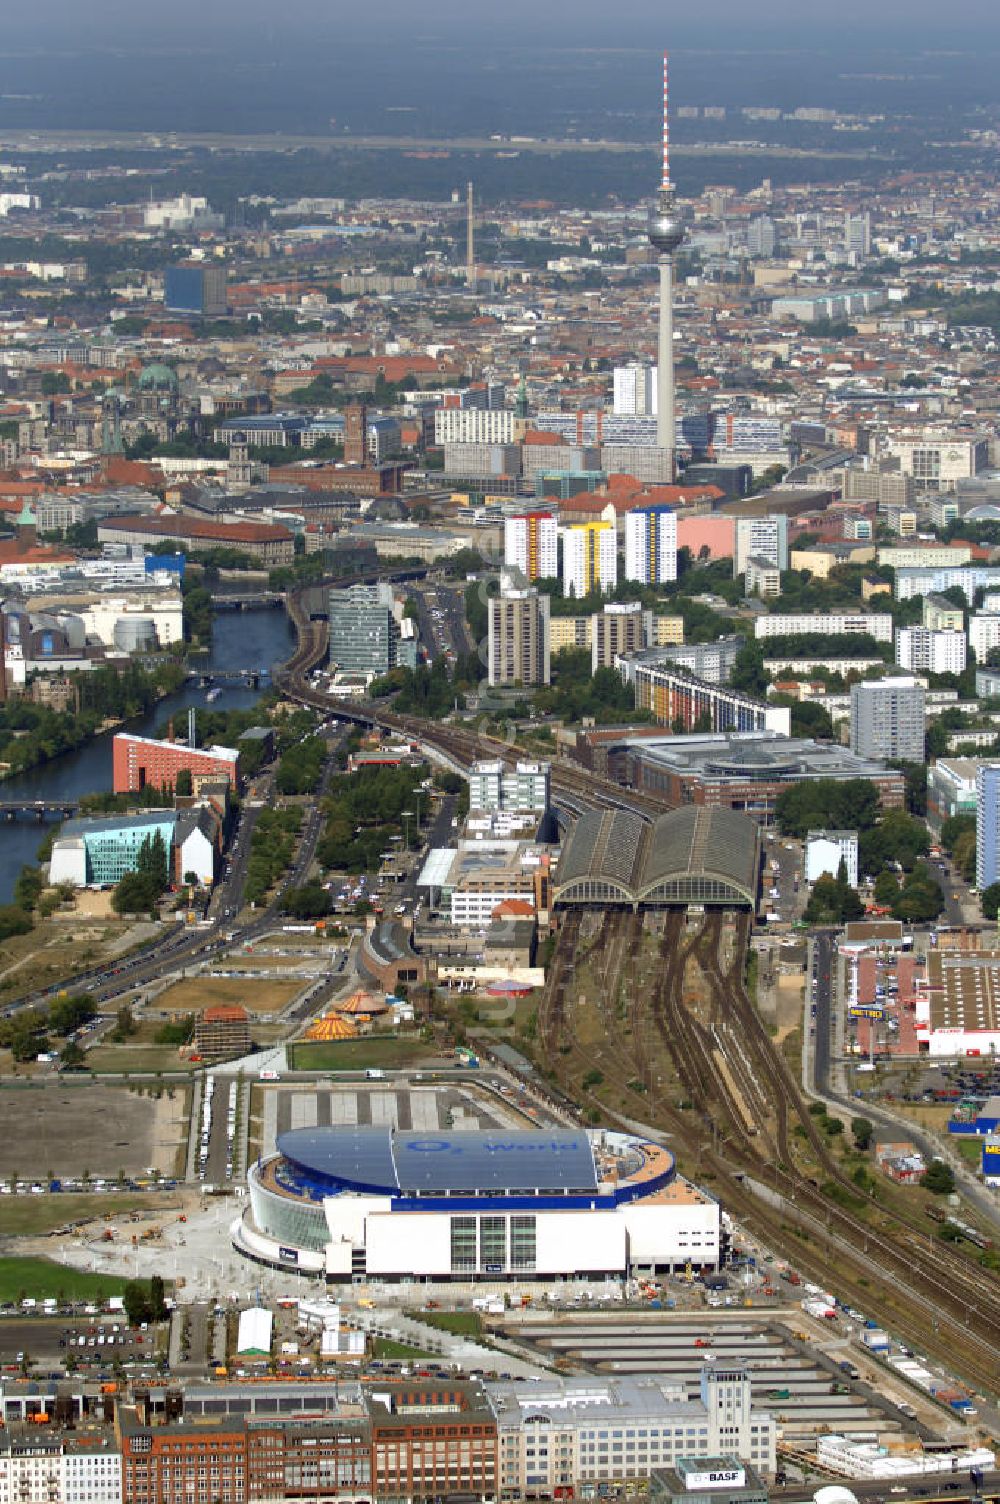 Luftbild Berlin - Blick auf die o2 - Veranstaltungsarena in Berlin - Friedrichshain